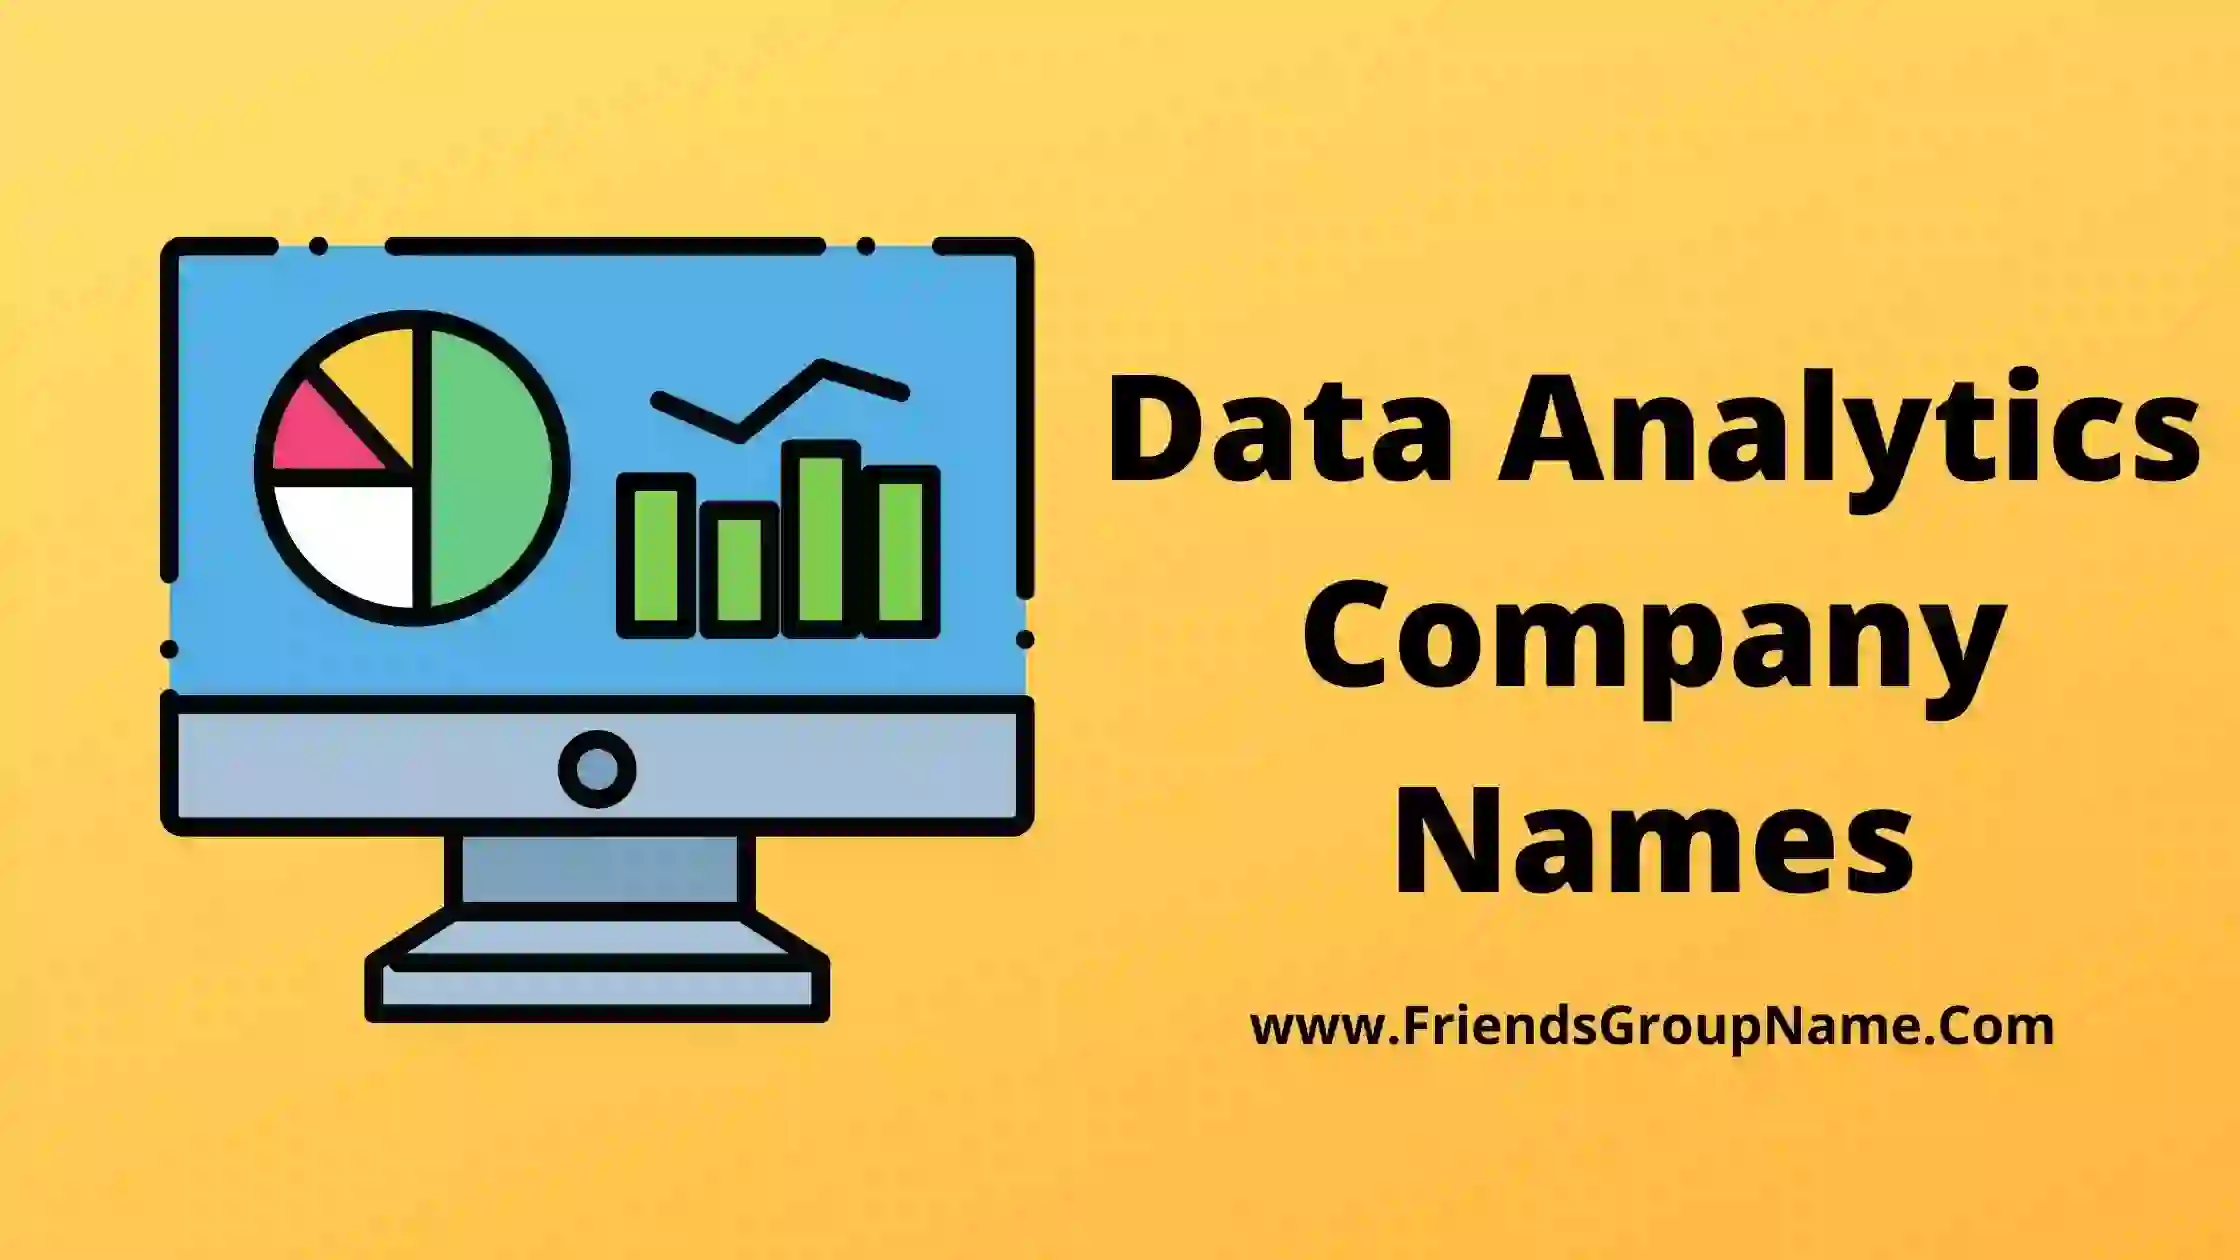 Data Analytics Company Names